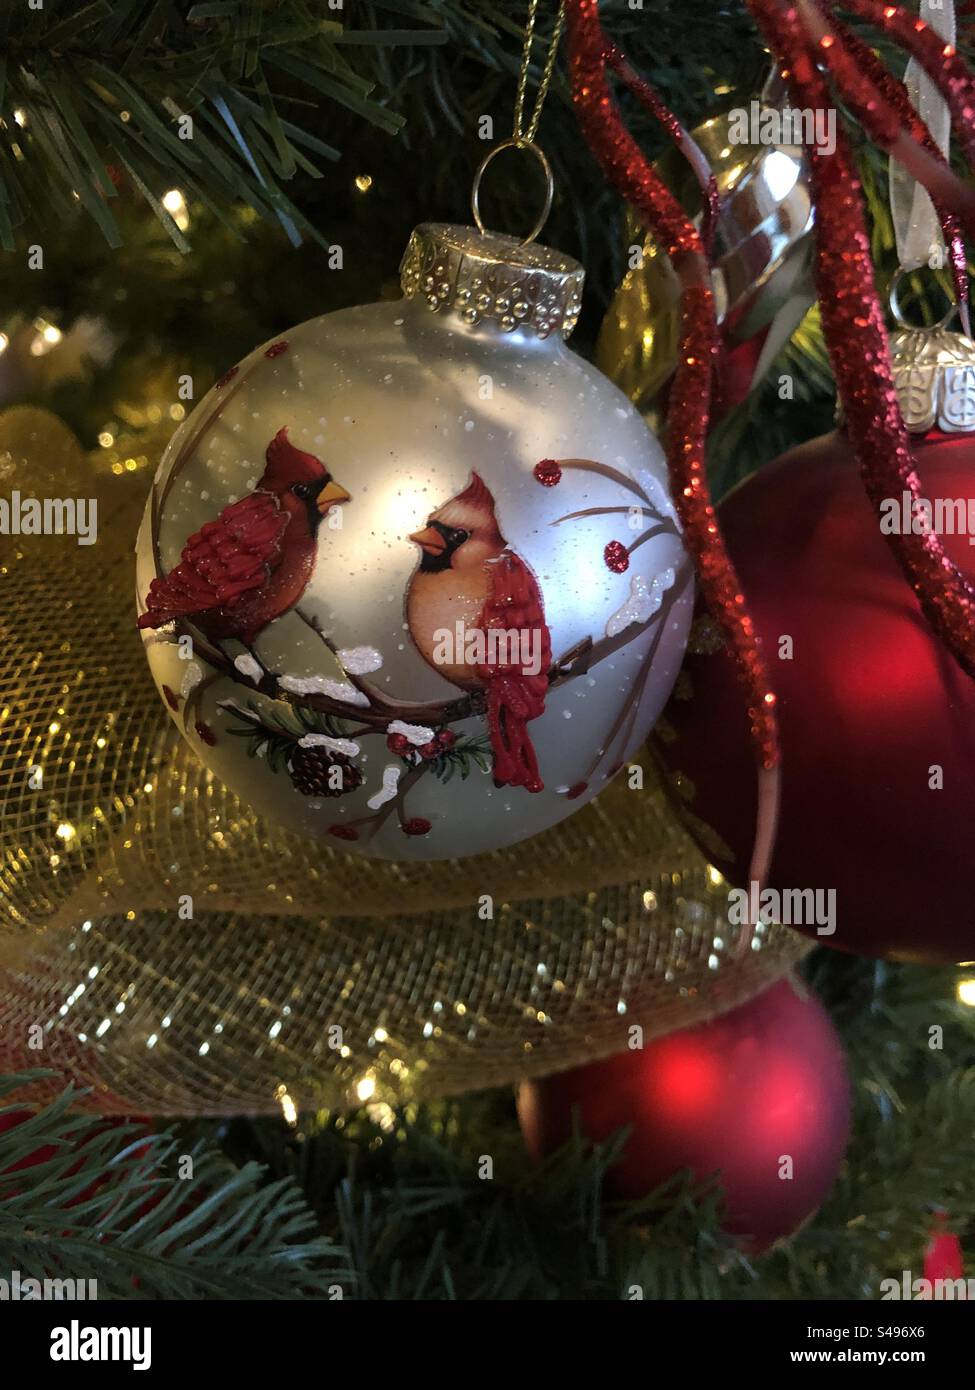 Weihnachtsschmuck hängt an einem Baum. Stockfoto